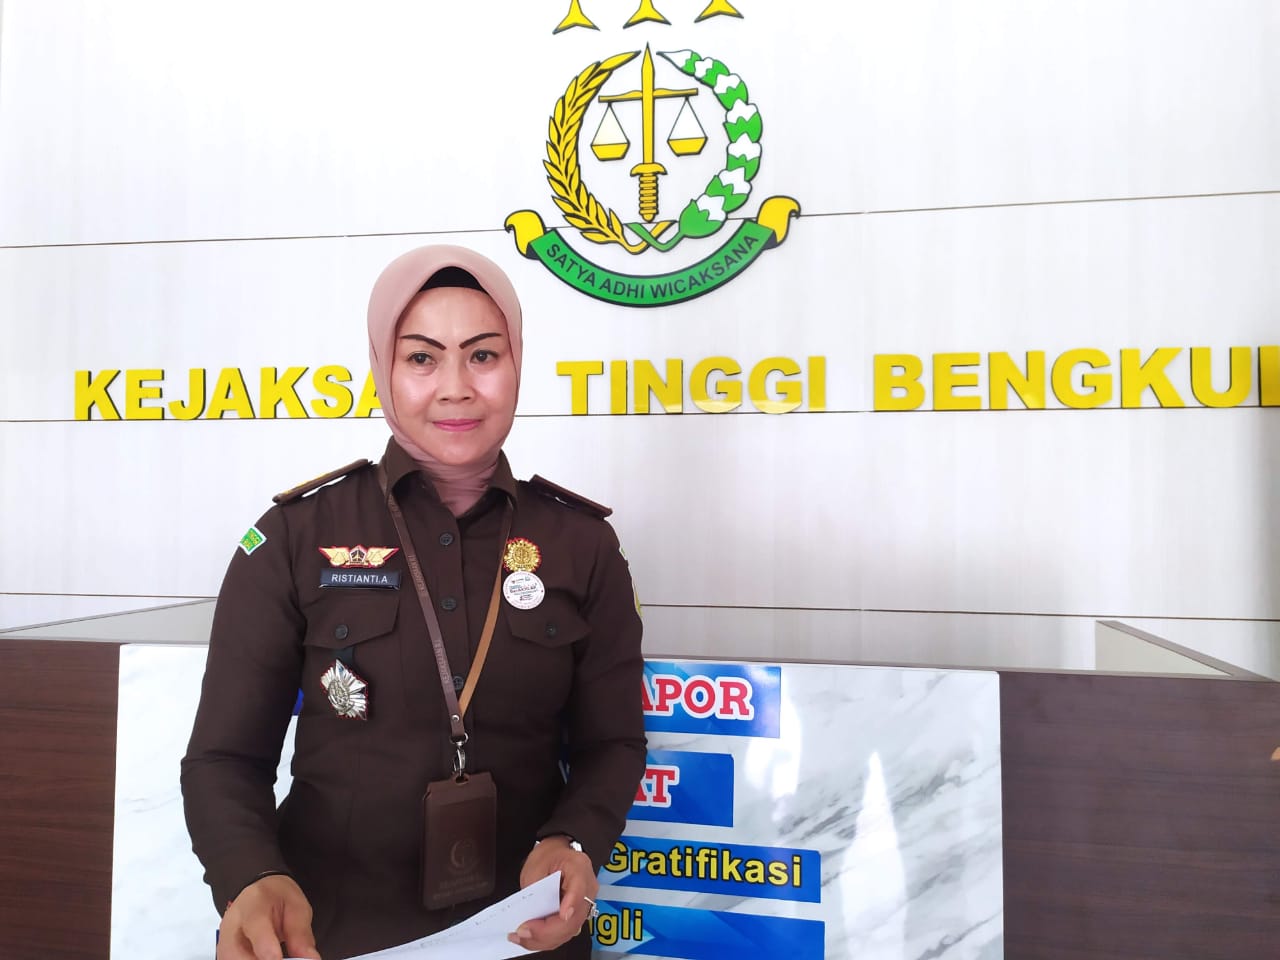 Jaksa Agung Mutasi Asisten, 3 Kajari di Bengkulu dan Promosi Koordinator 